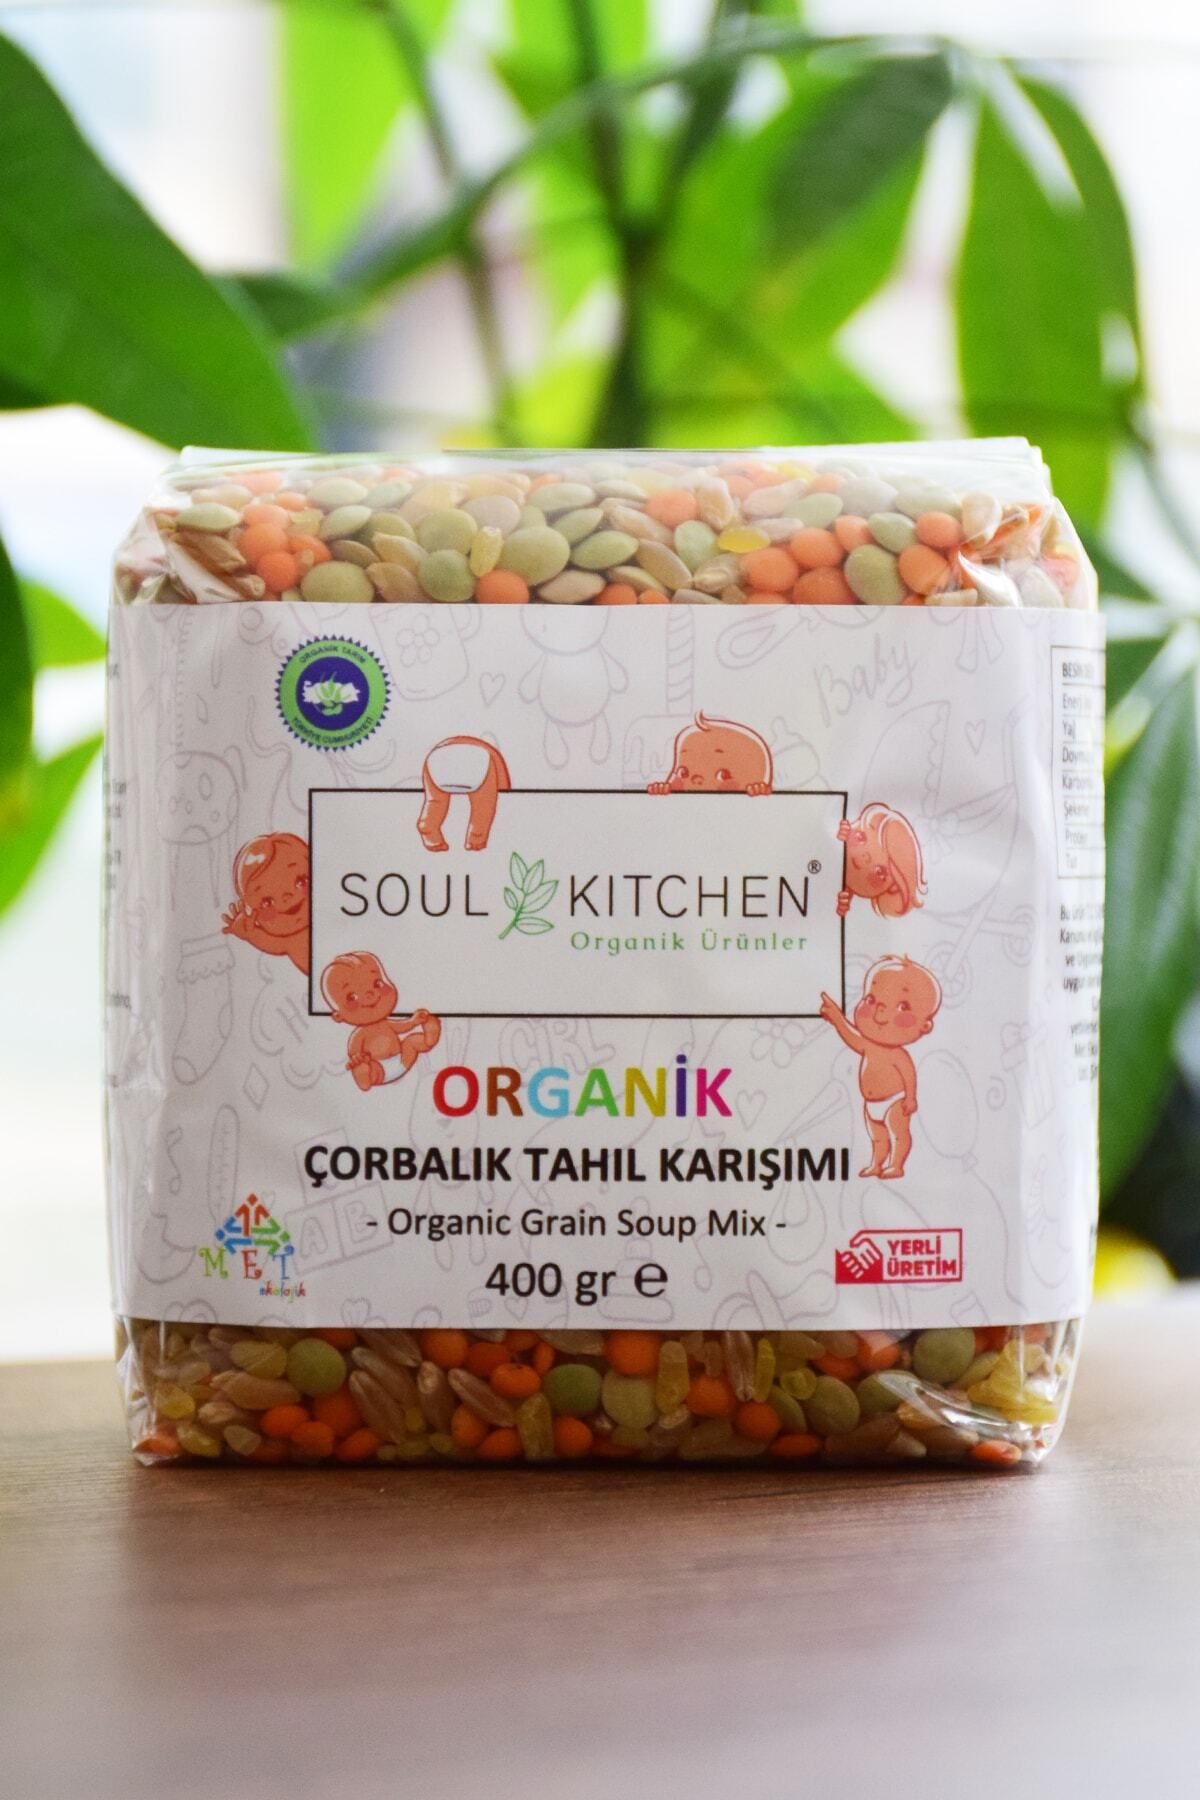 Soul Kitchen Organik Ürünler Organik Bebek Çorbalık Tahıl Karışımı 400gr - Eko Paket